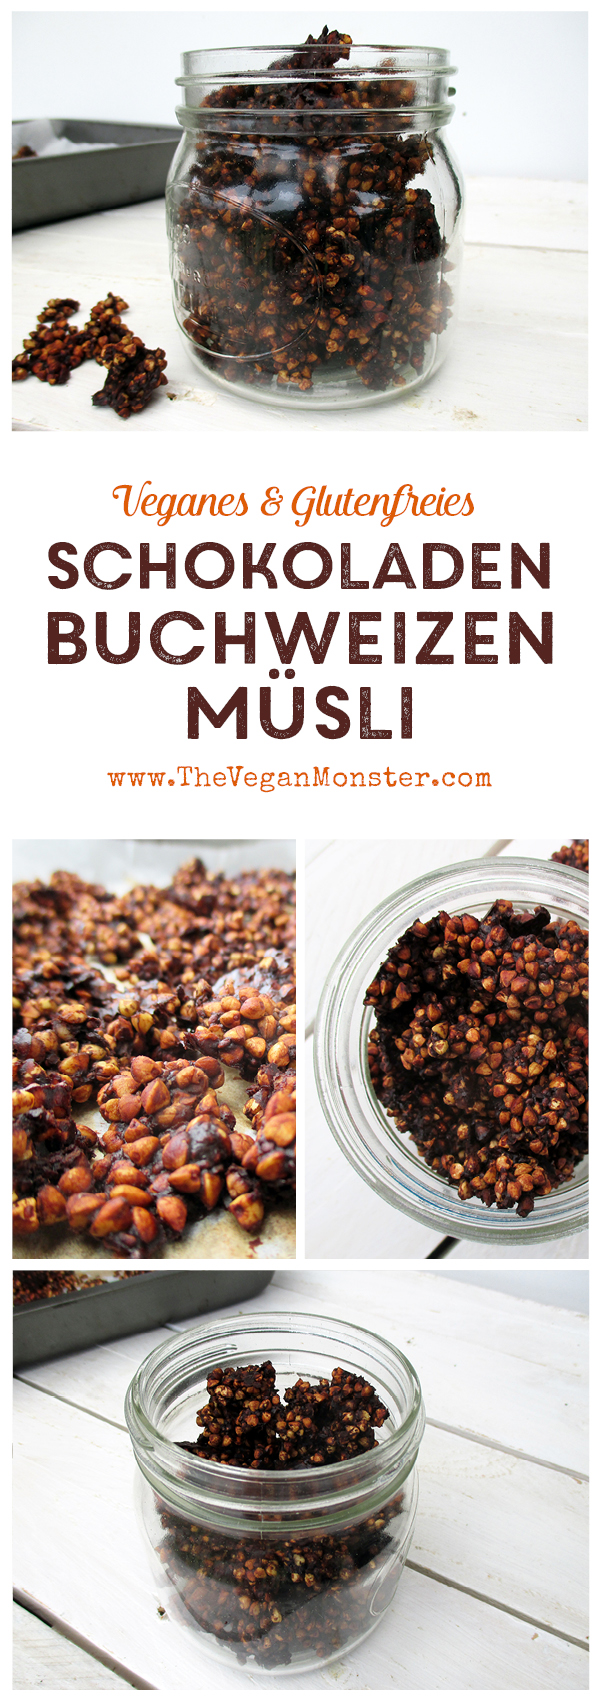 Super Knuspriges Schokoladen Buchweizen Müsli (Vegan, Glutenfrei) | Das ...